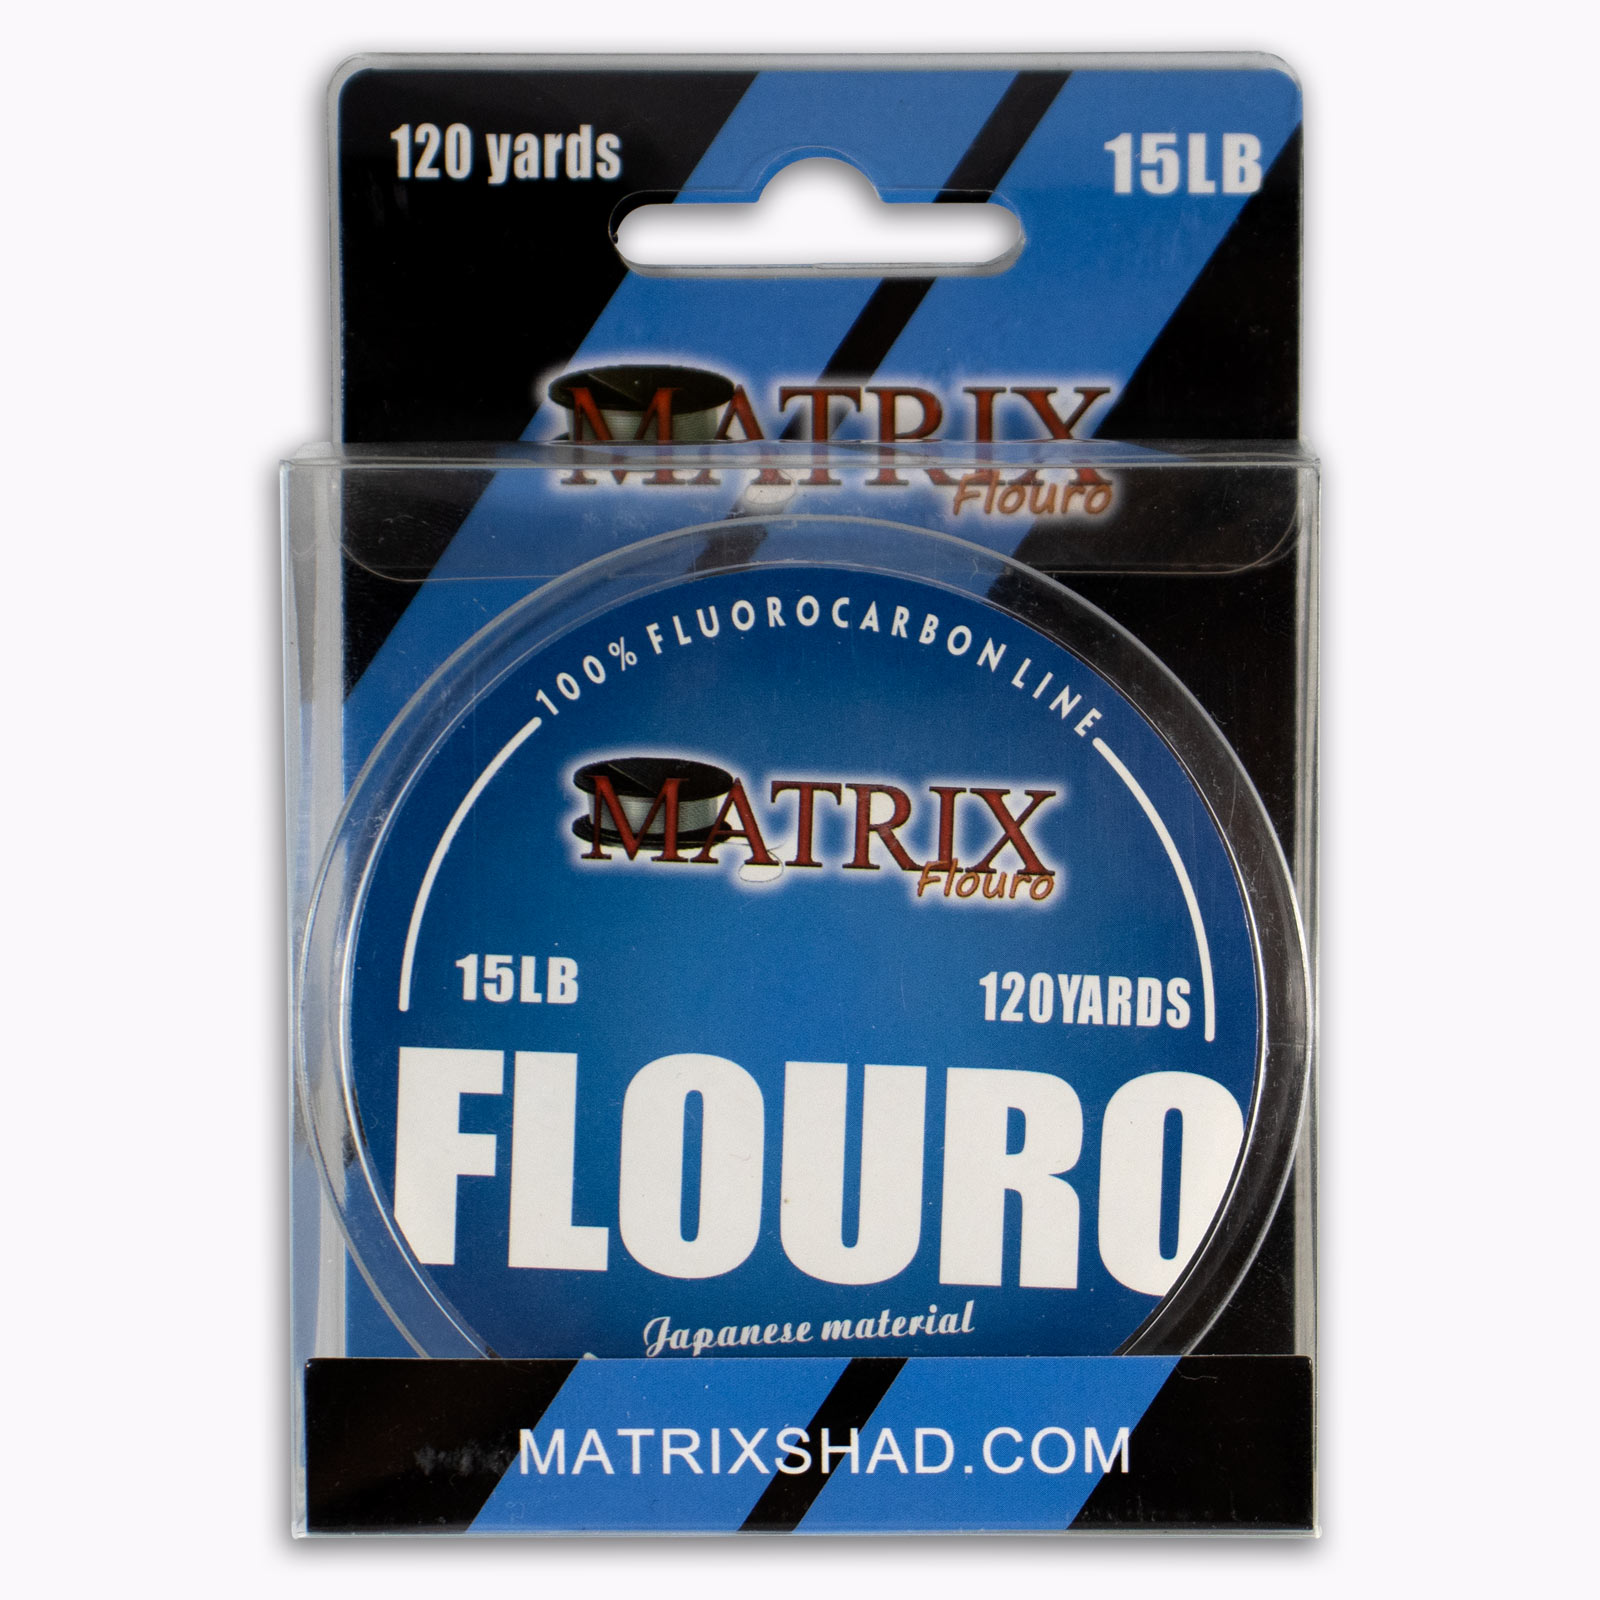 Matrix Flouro - Matrix Shad